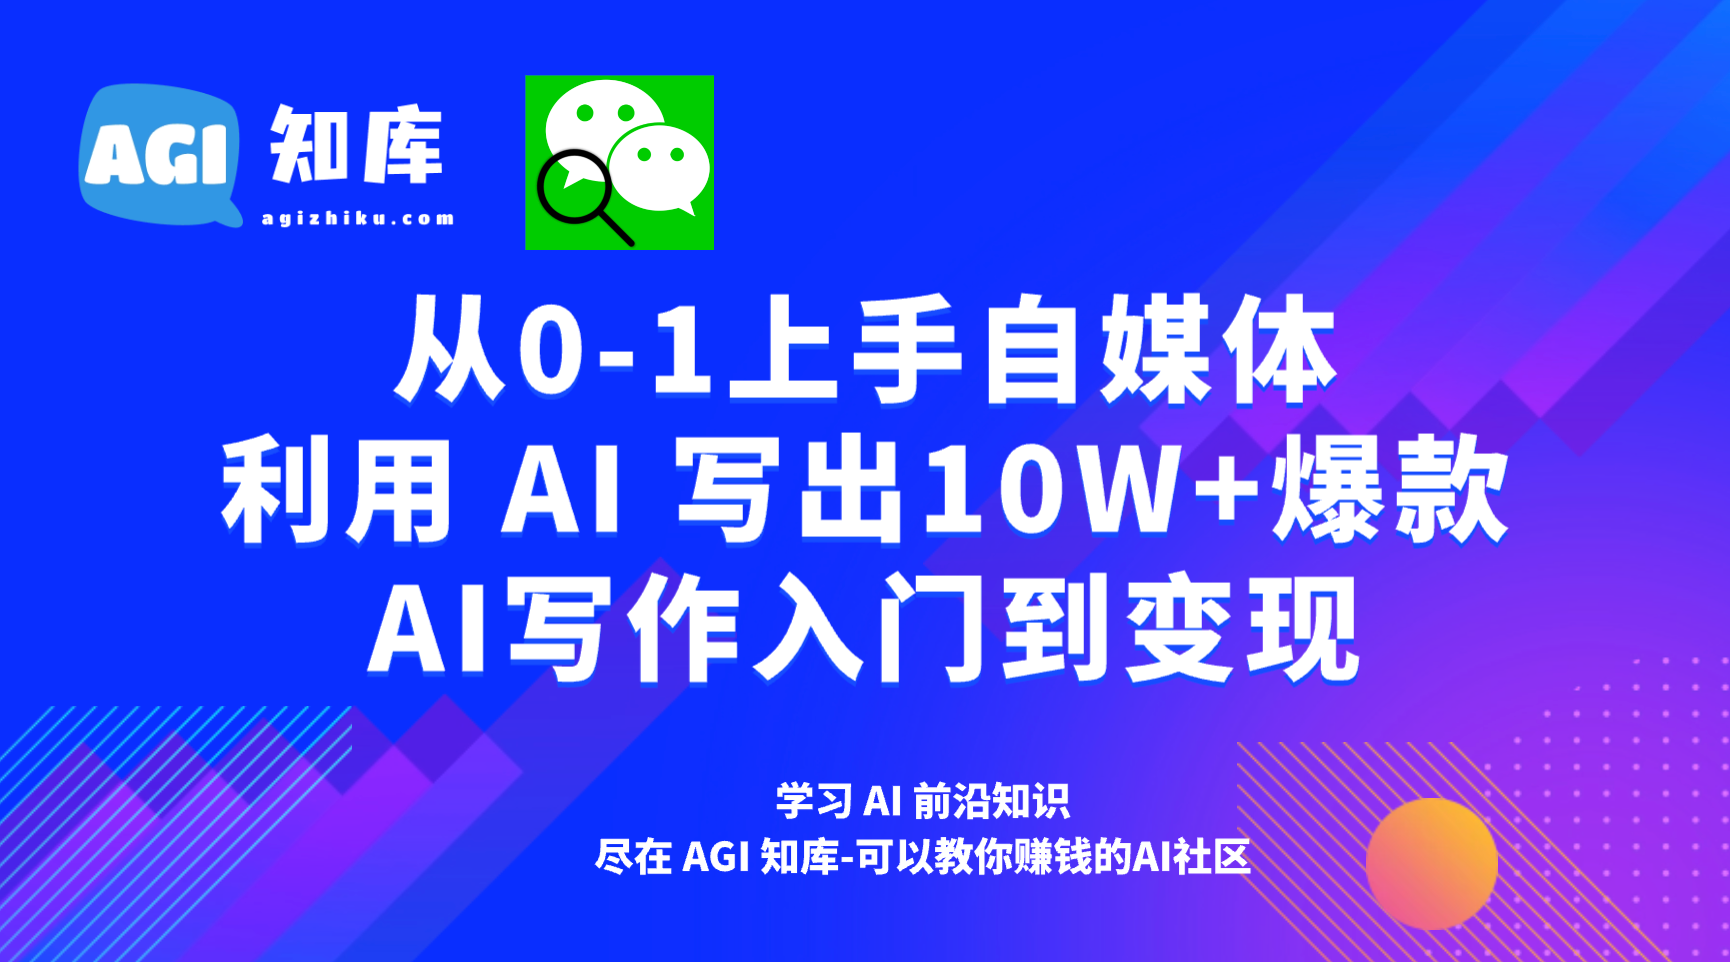 AI公众号写作35：公众号爆文项目详解-AGI智库-全国最大的AI智库社区 | AI导航 | AI学习网站